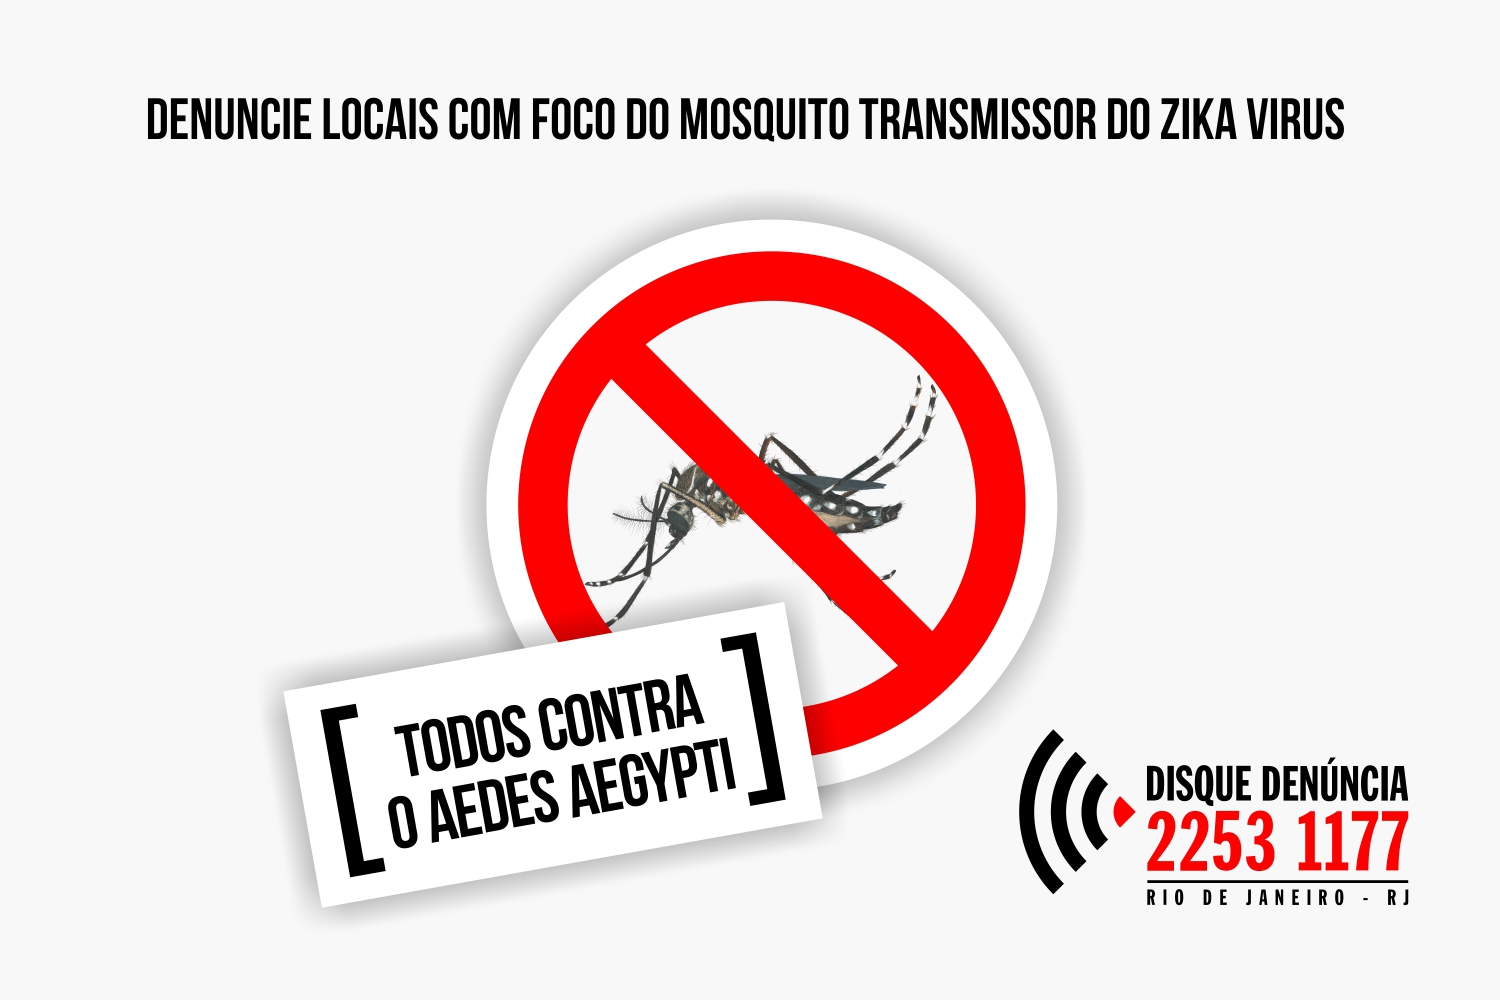 Até outubro, mais de 4.500 casos de dengue foram registrados na cidade do Rio